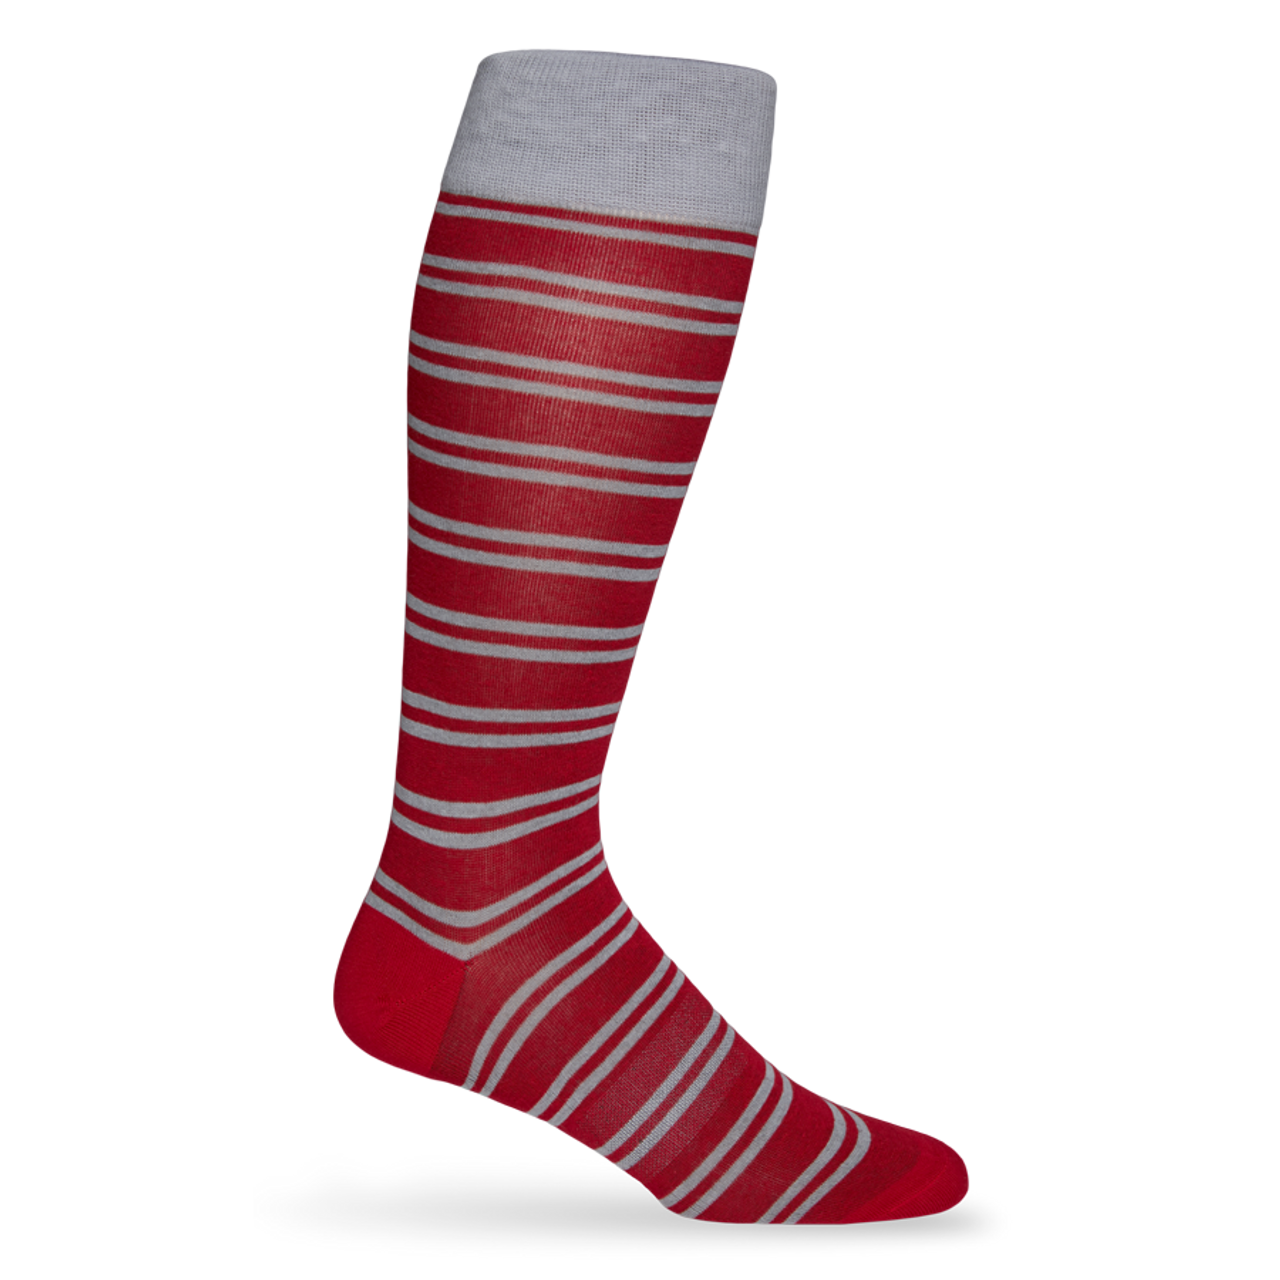 DeadSoxy Crimson Double Stripe Socks